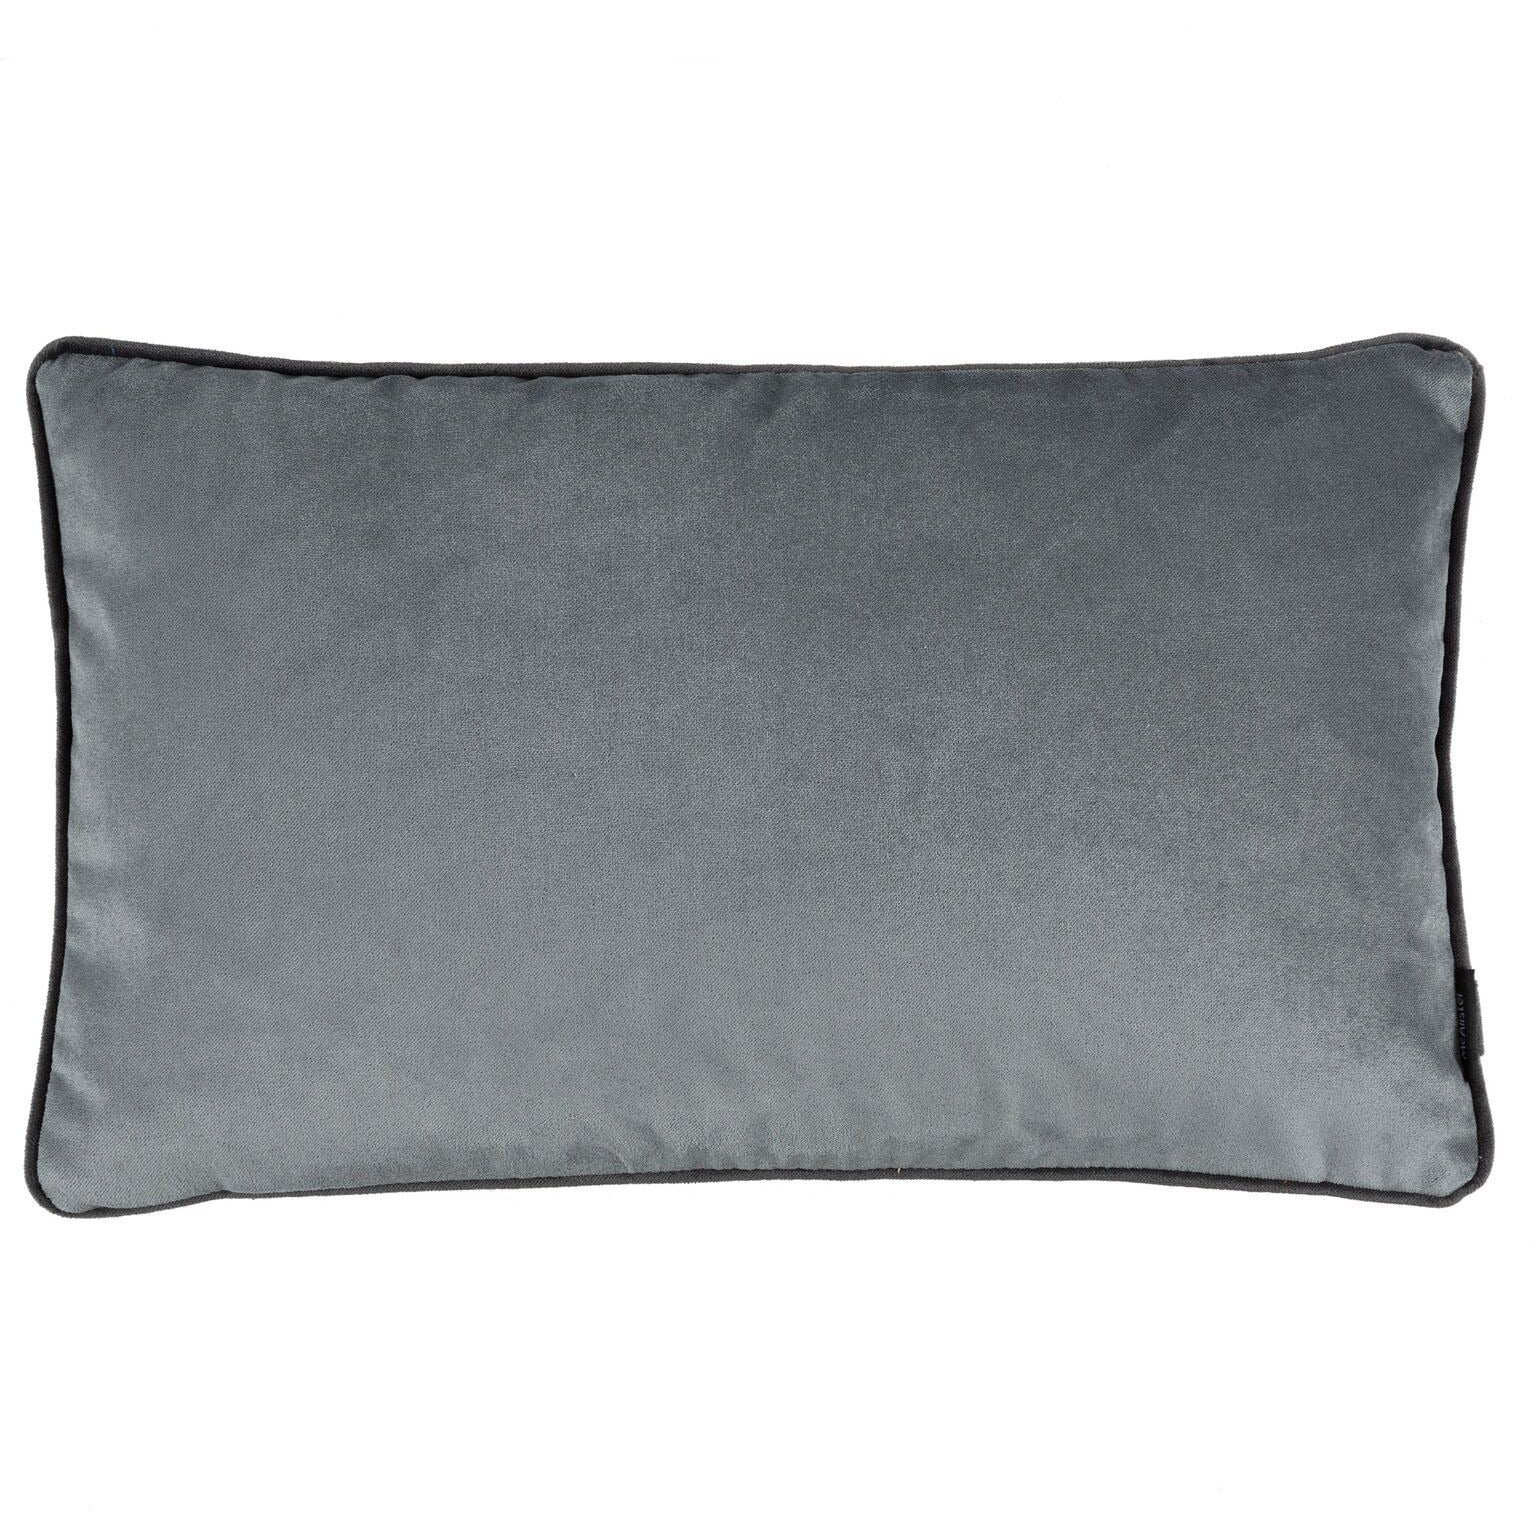 McAlister Textiles Matt Soft Silver Velvet Pillow Pillow Cover Only 50cm x 30cm 